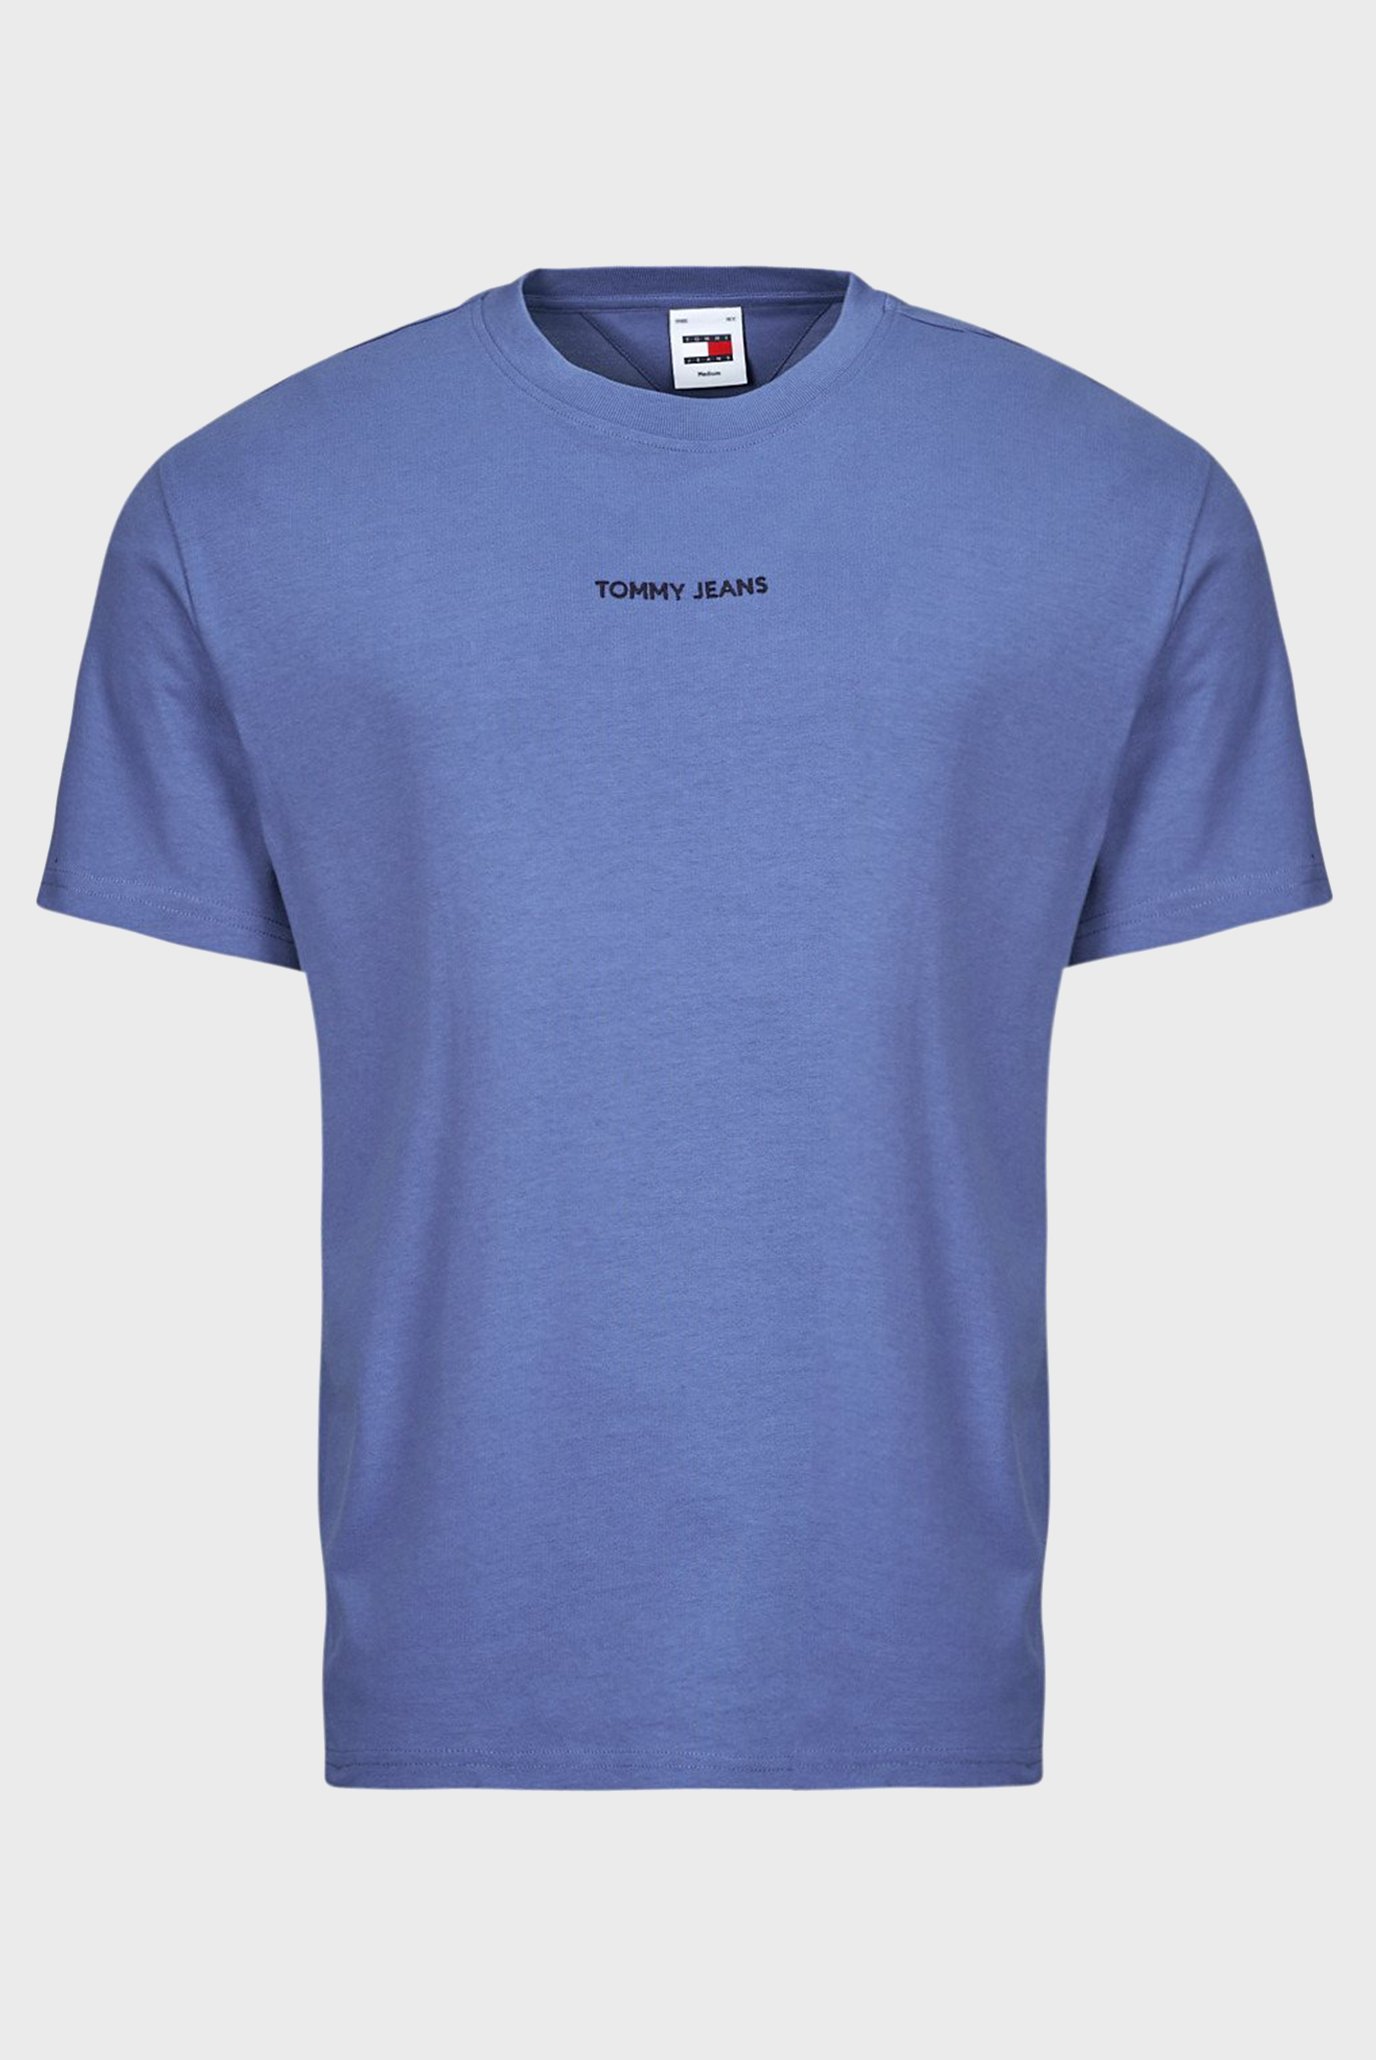 Мужская синяя футболка TJM REG S NEW CLASSICS TEE EXT 1